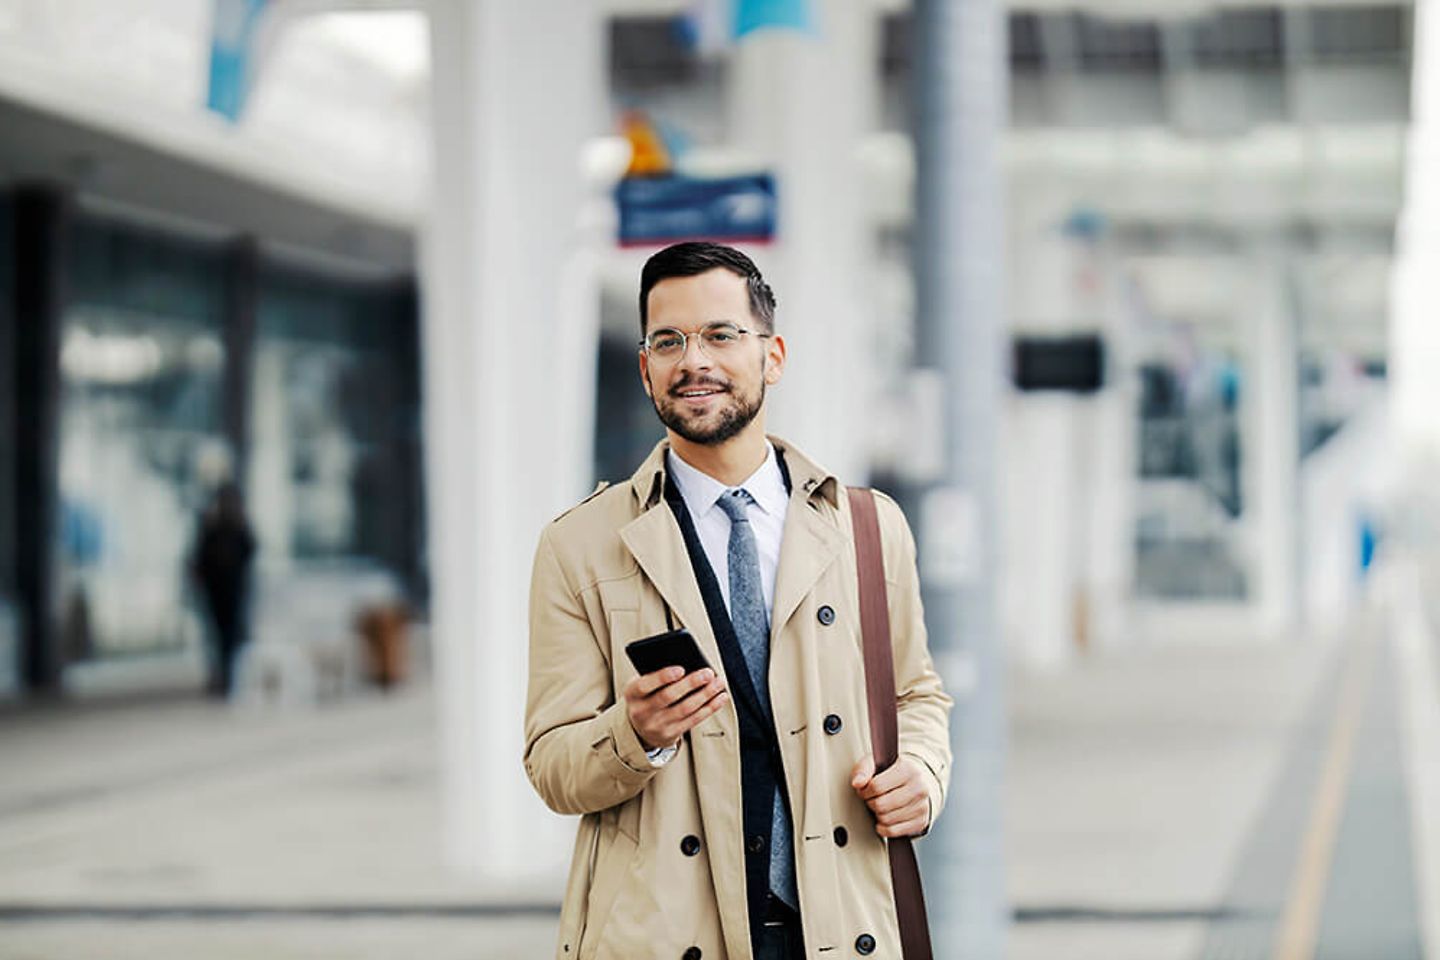 Un homme en tenue d’affaires se tient près de la voie ferrée, smartphone à la main